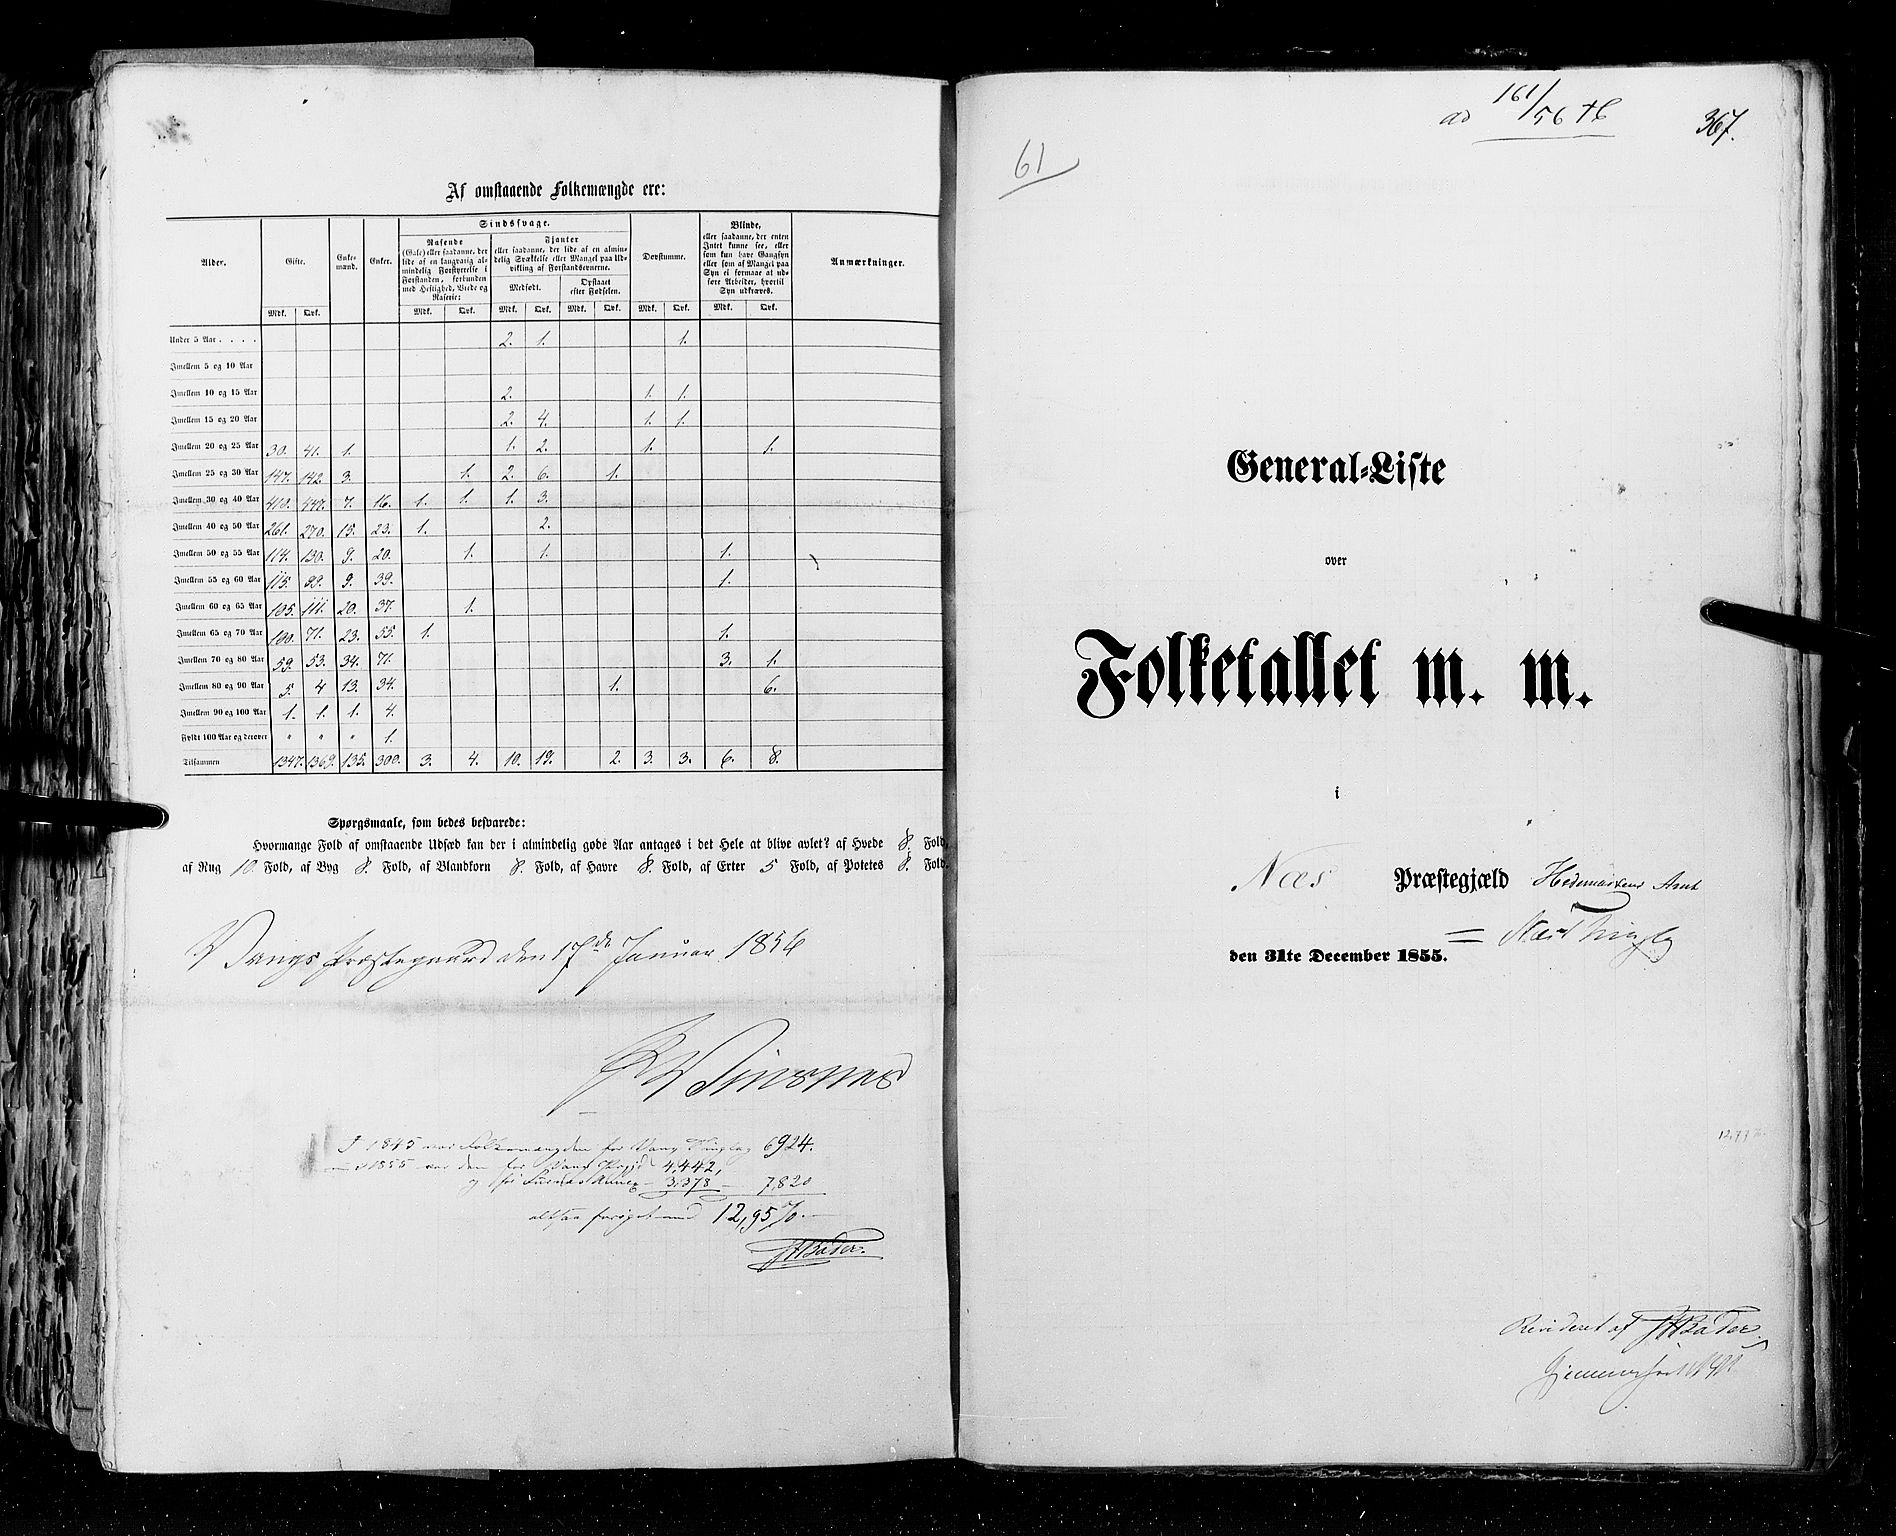 RA, Folketellingen 1855, bind 1: Akershus amt, Smålenenes amt og Hedemarken amt, 1855, s. 367